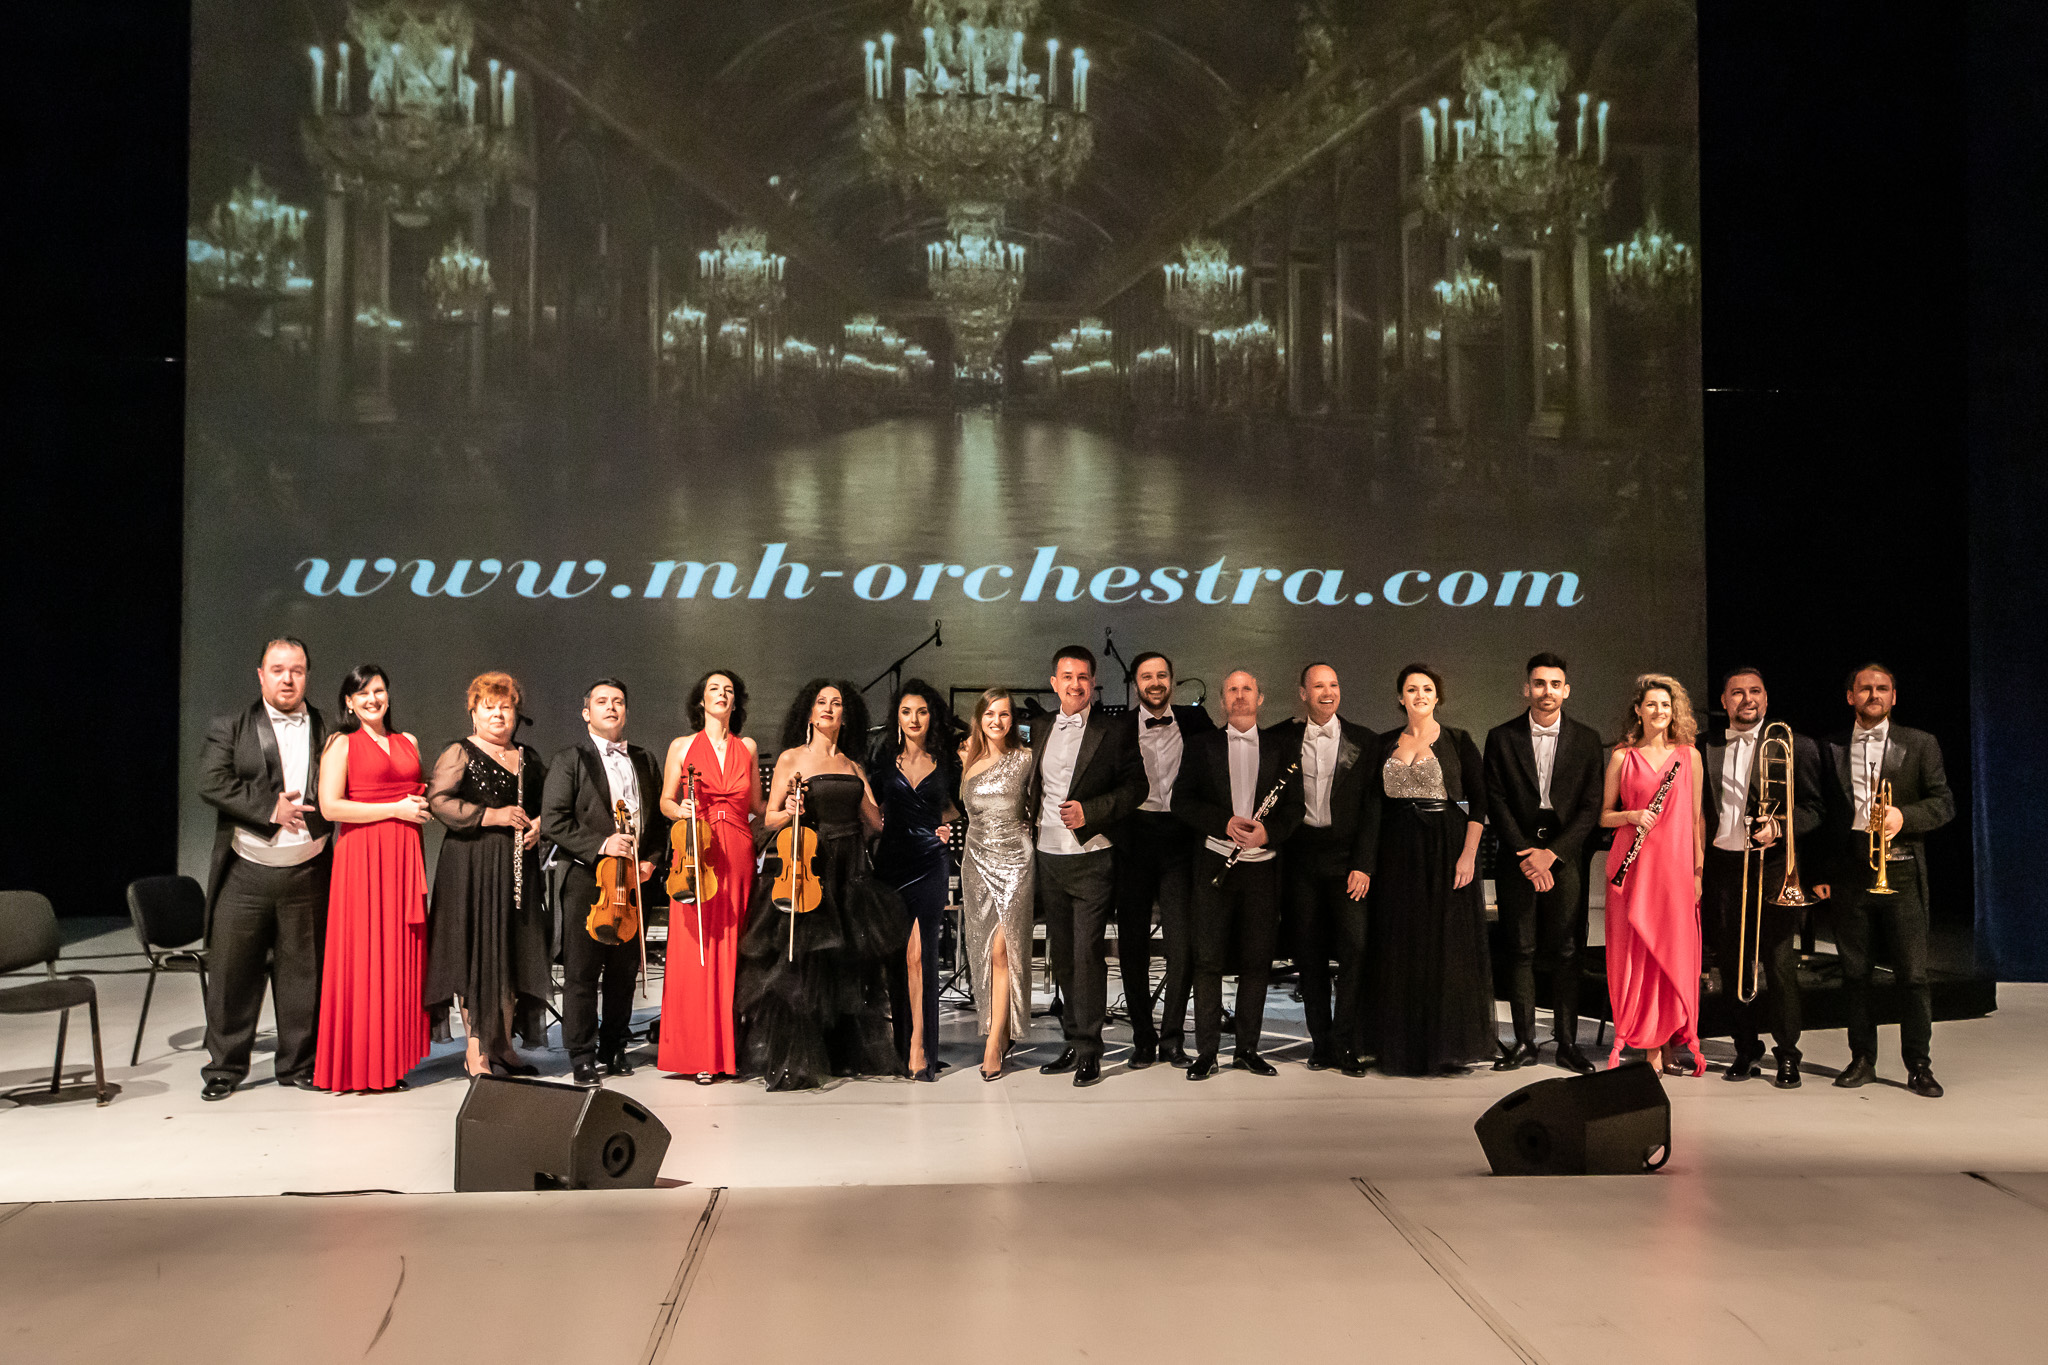 TIMELESS MOODS - concert crossover cu intrare liberă, pe 7 noiembrie, la Filarmonica de Stat Sibiu